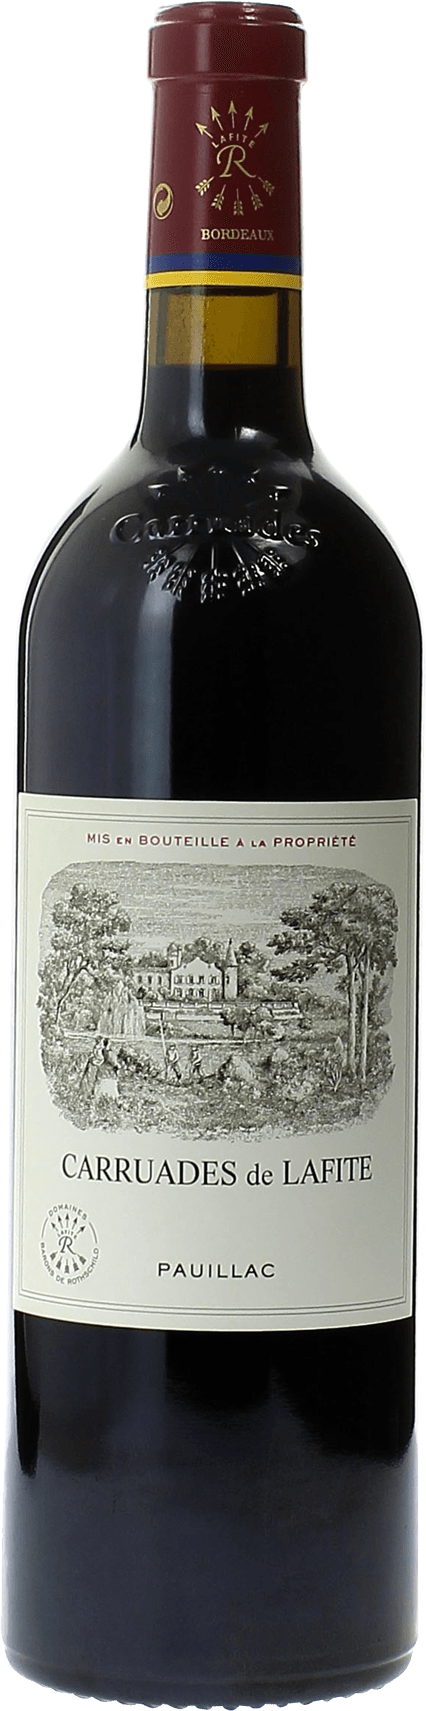 Carruades de lafite 1998 2me vin de LAFITE ROTHSCHILD Pauillac, Bordeaux rouge